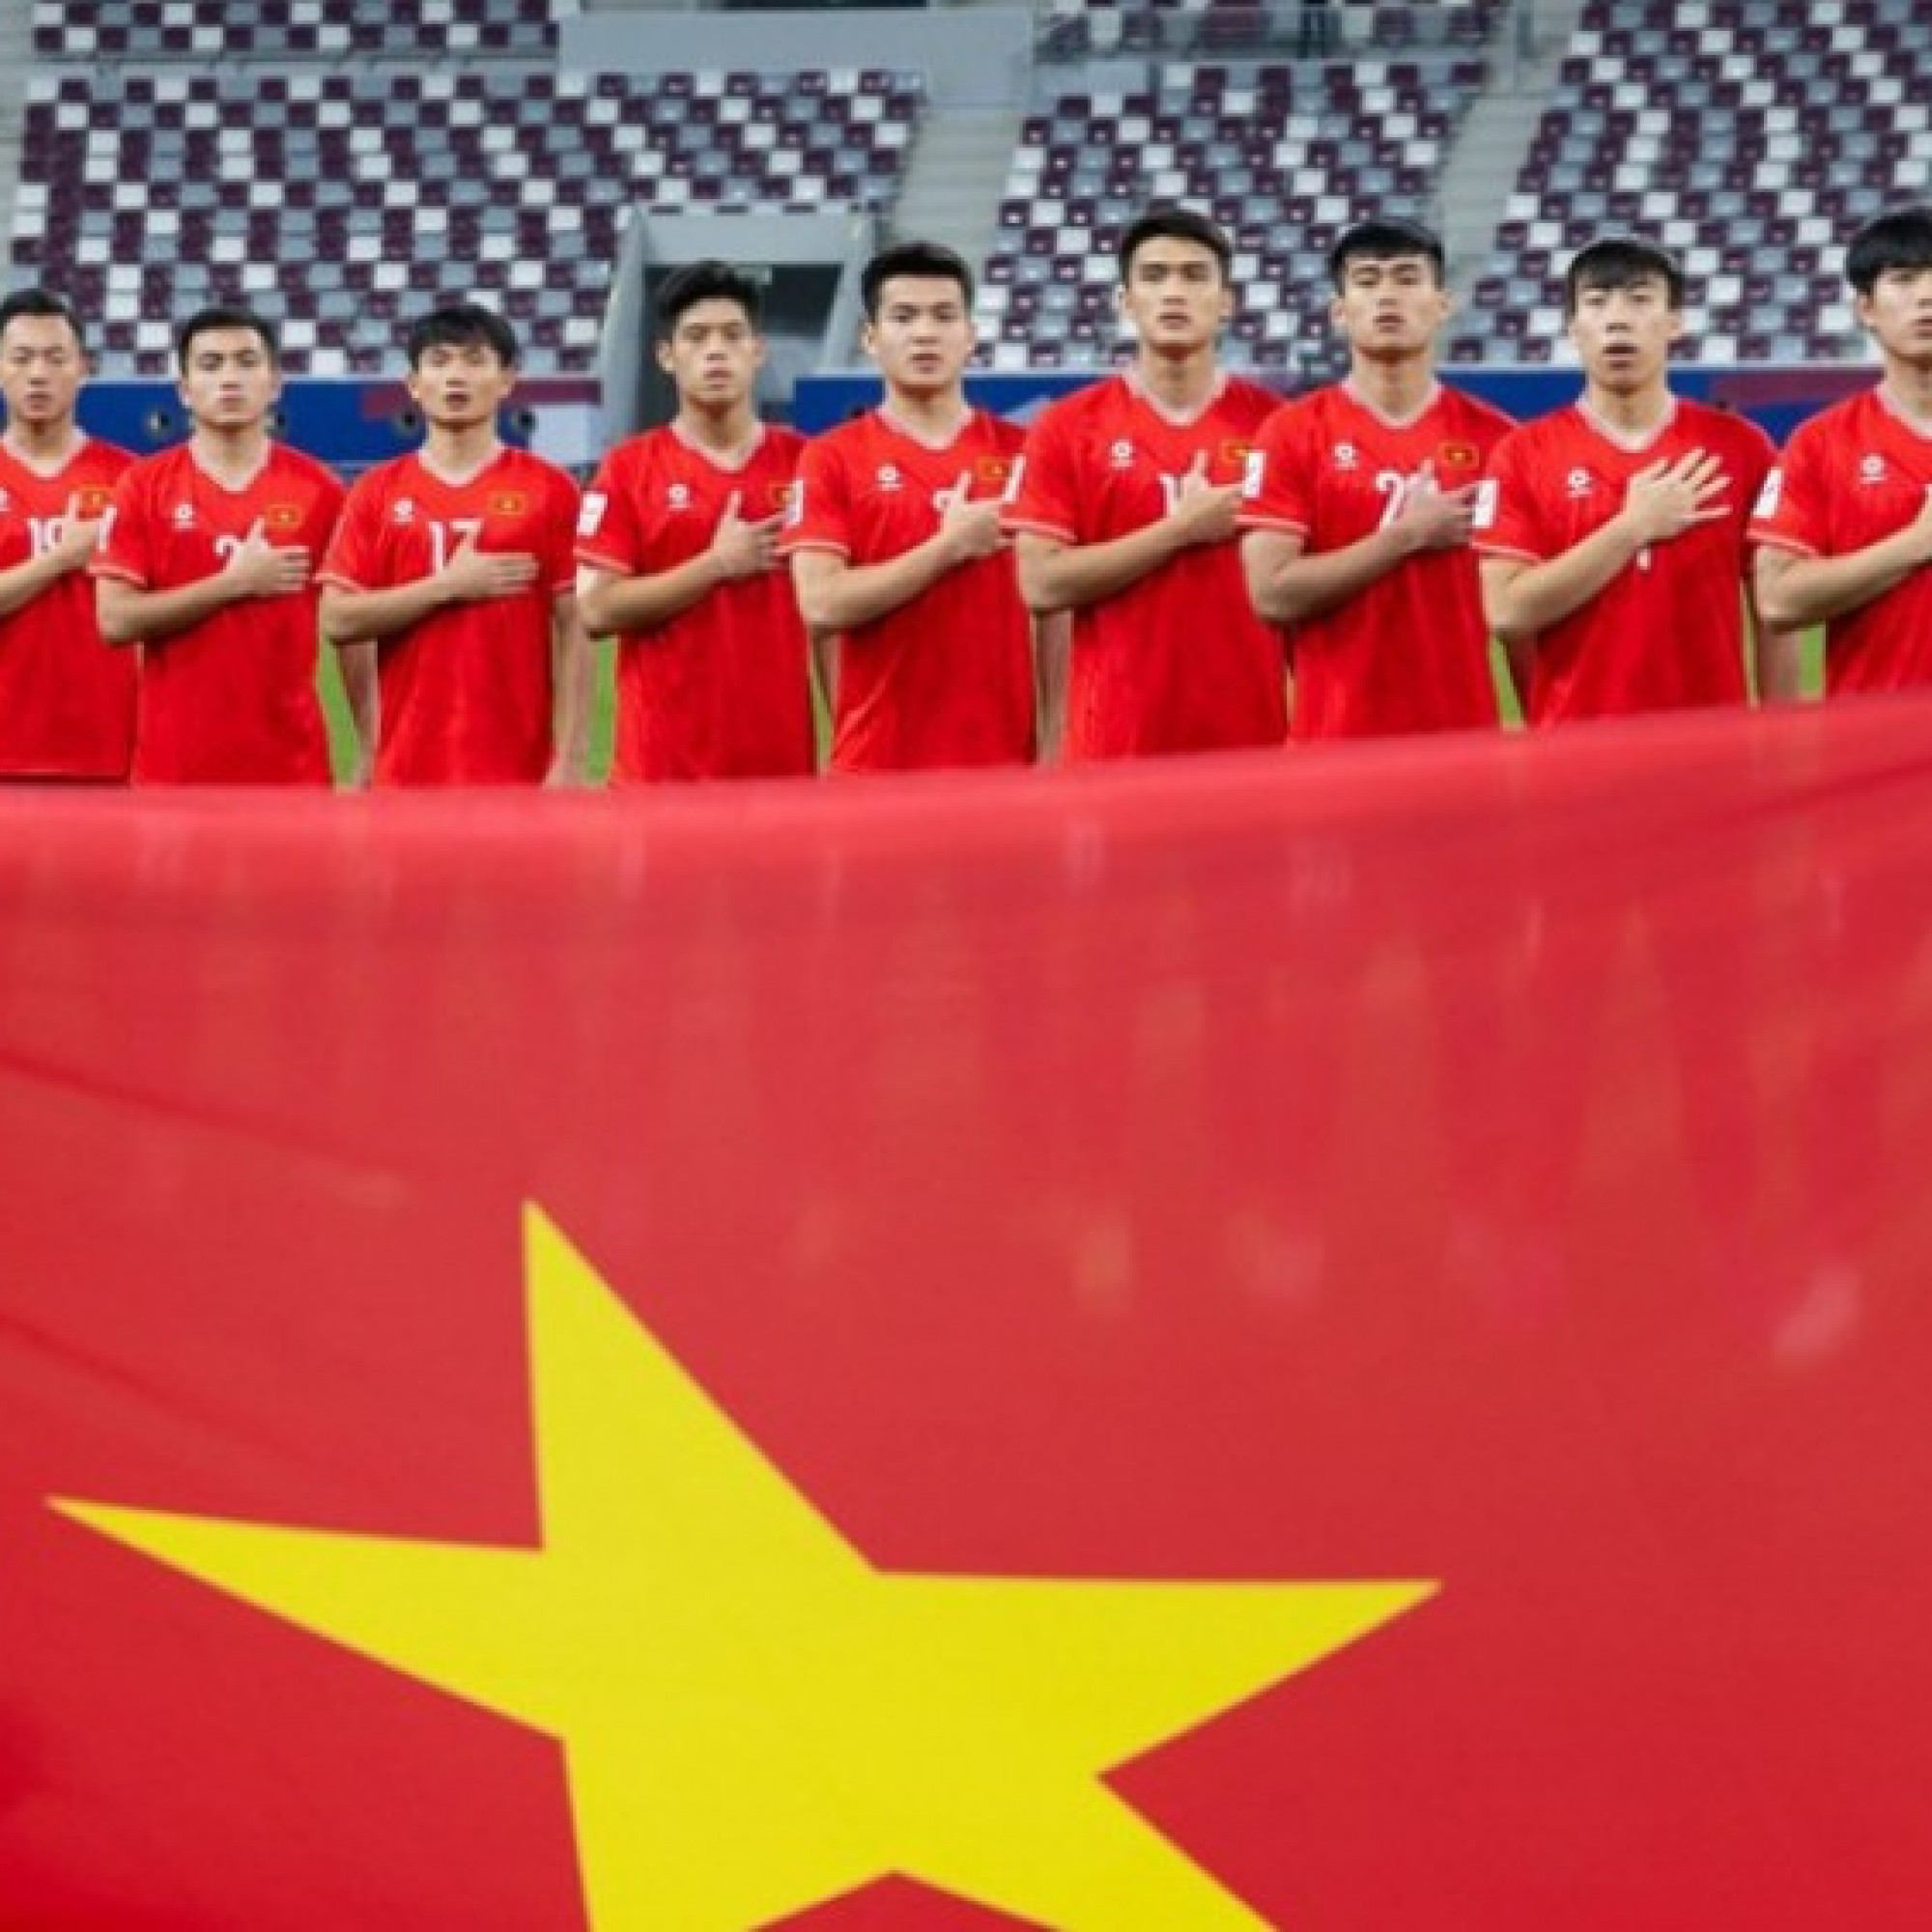  - Trực tiếp bóng đá U23 Việt Nam - U23 Iraq: Chờ mối duyên lành với các đội Tây Á (U23 châu Á)